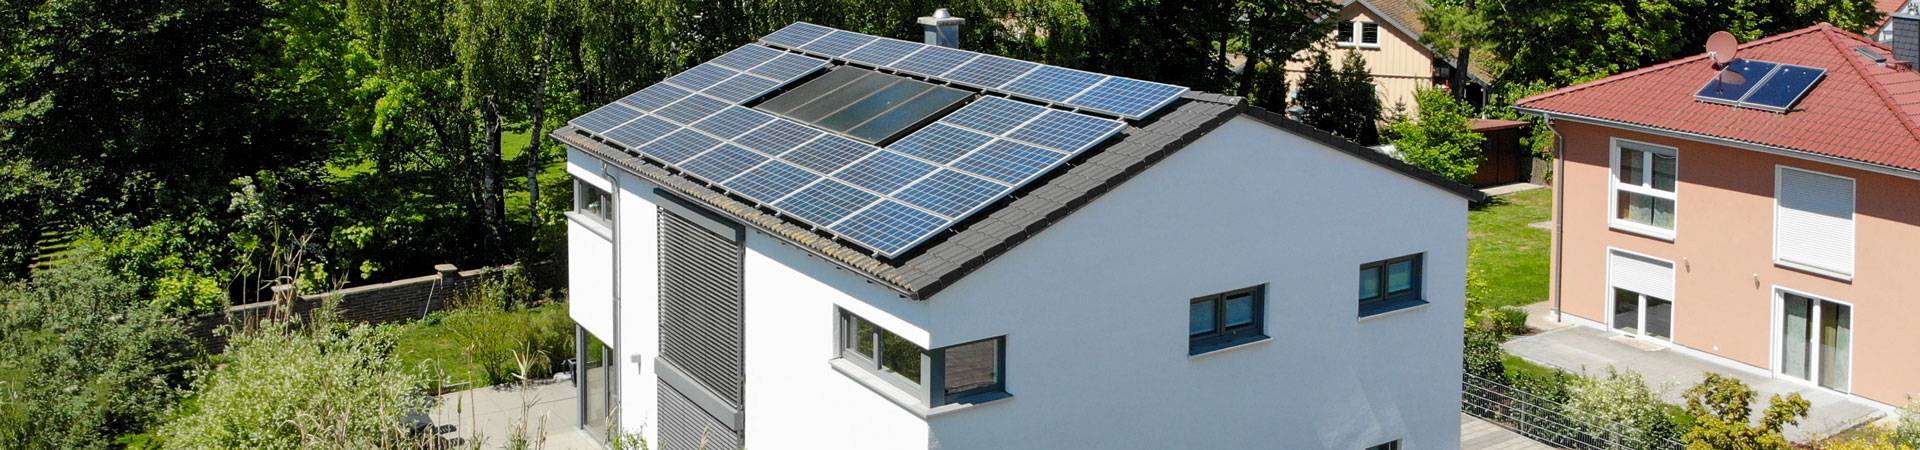 photovoltaik oberösterreich